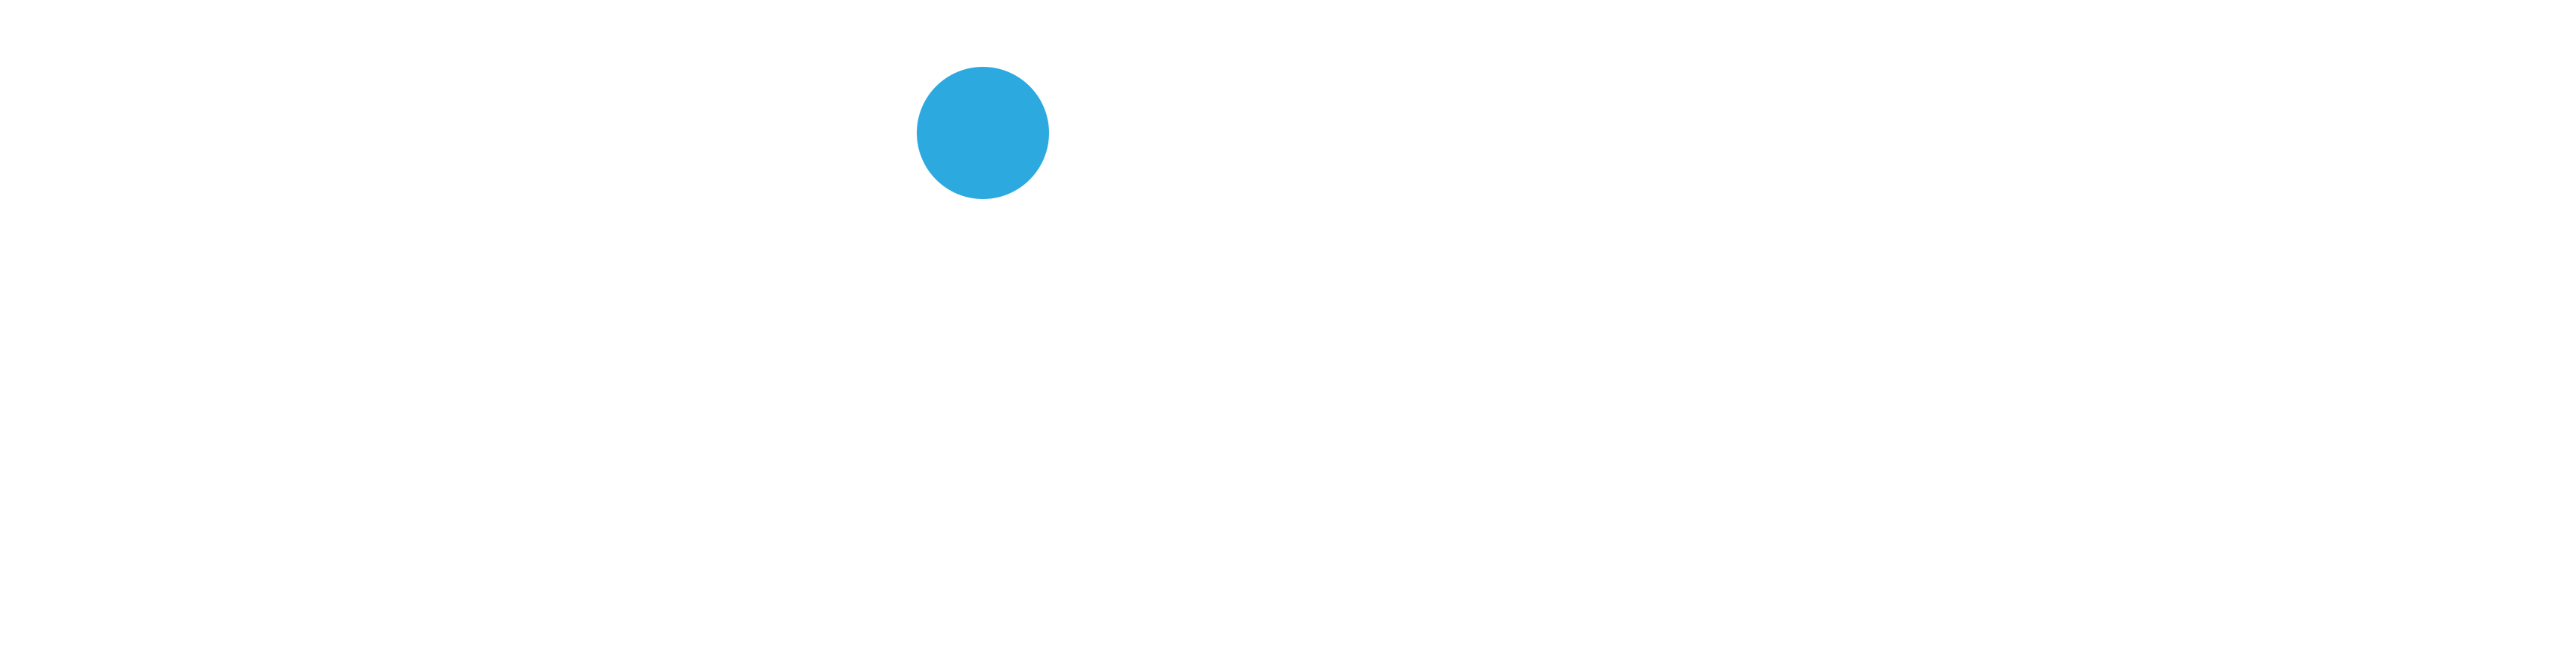 School of Medicine and Health Sciences